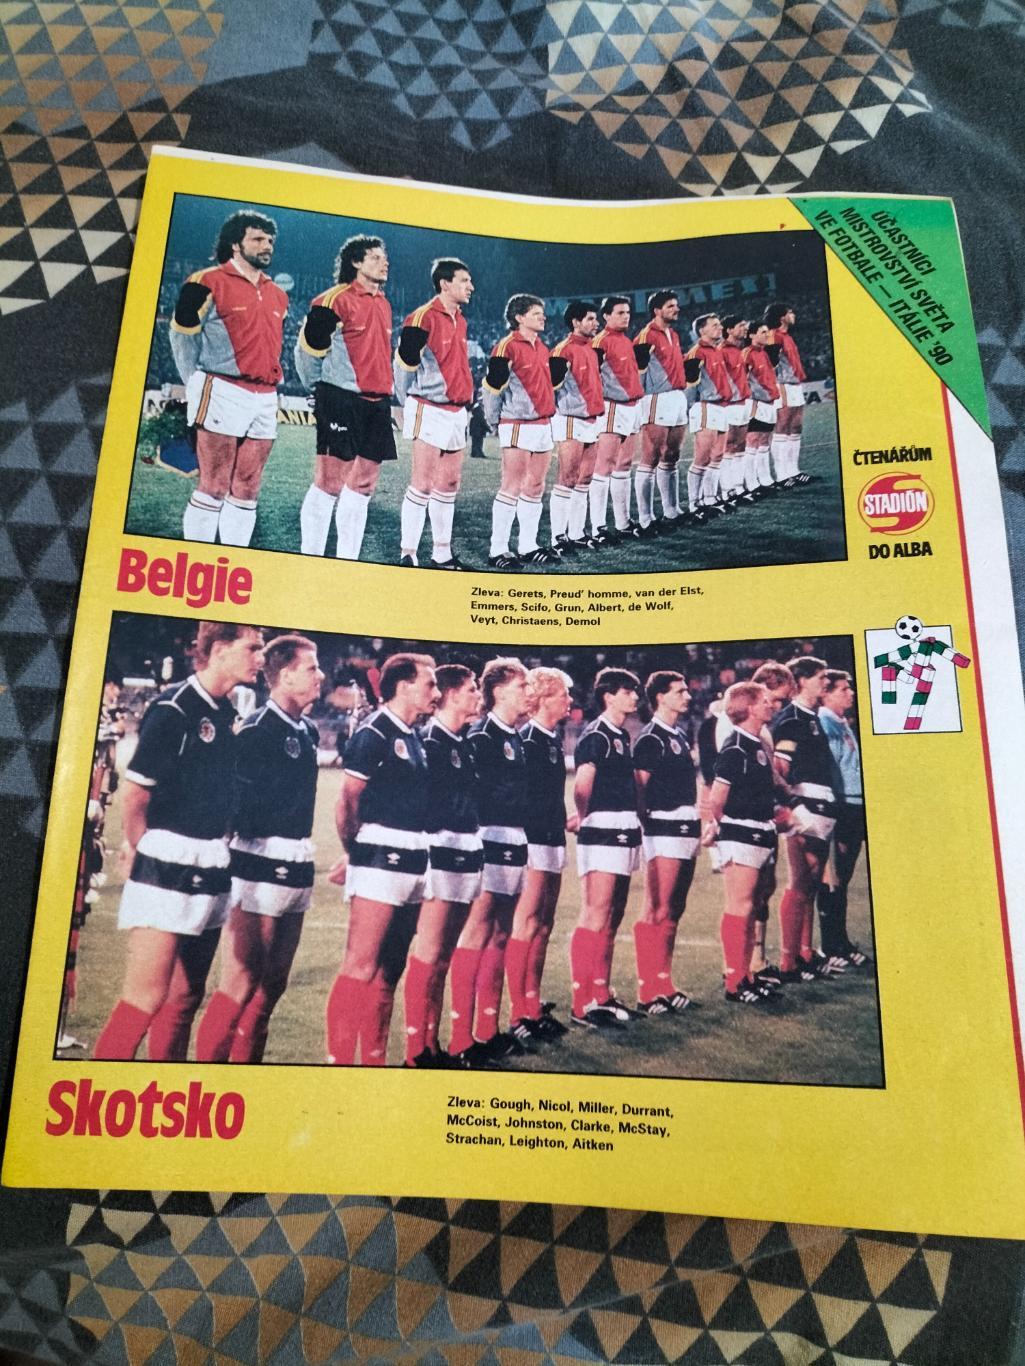 Постер из журнала Стадион.сб.Бельгии и сб.Шотландия.